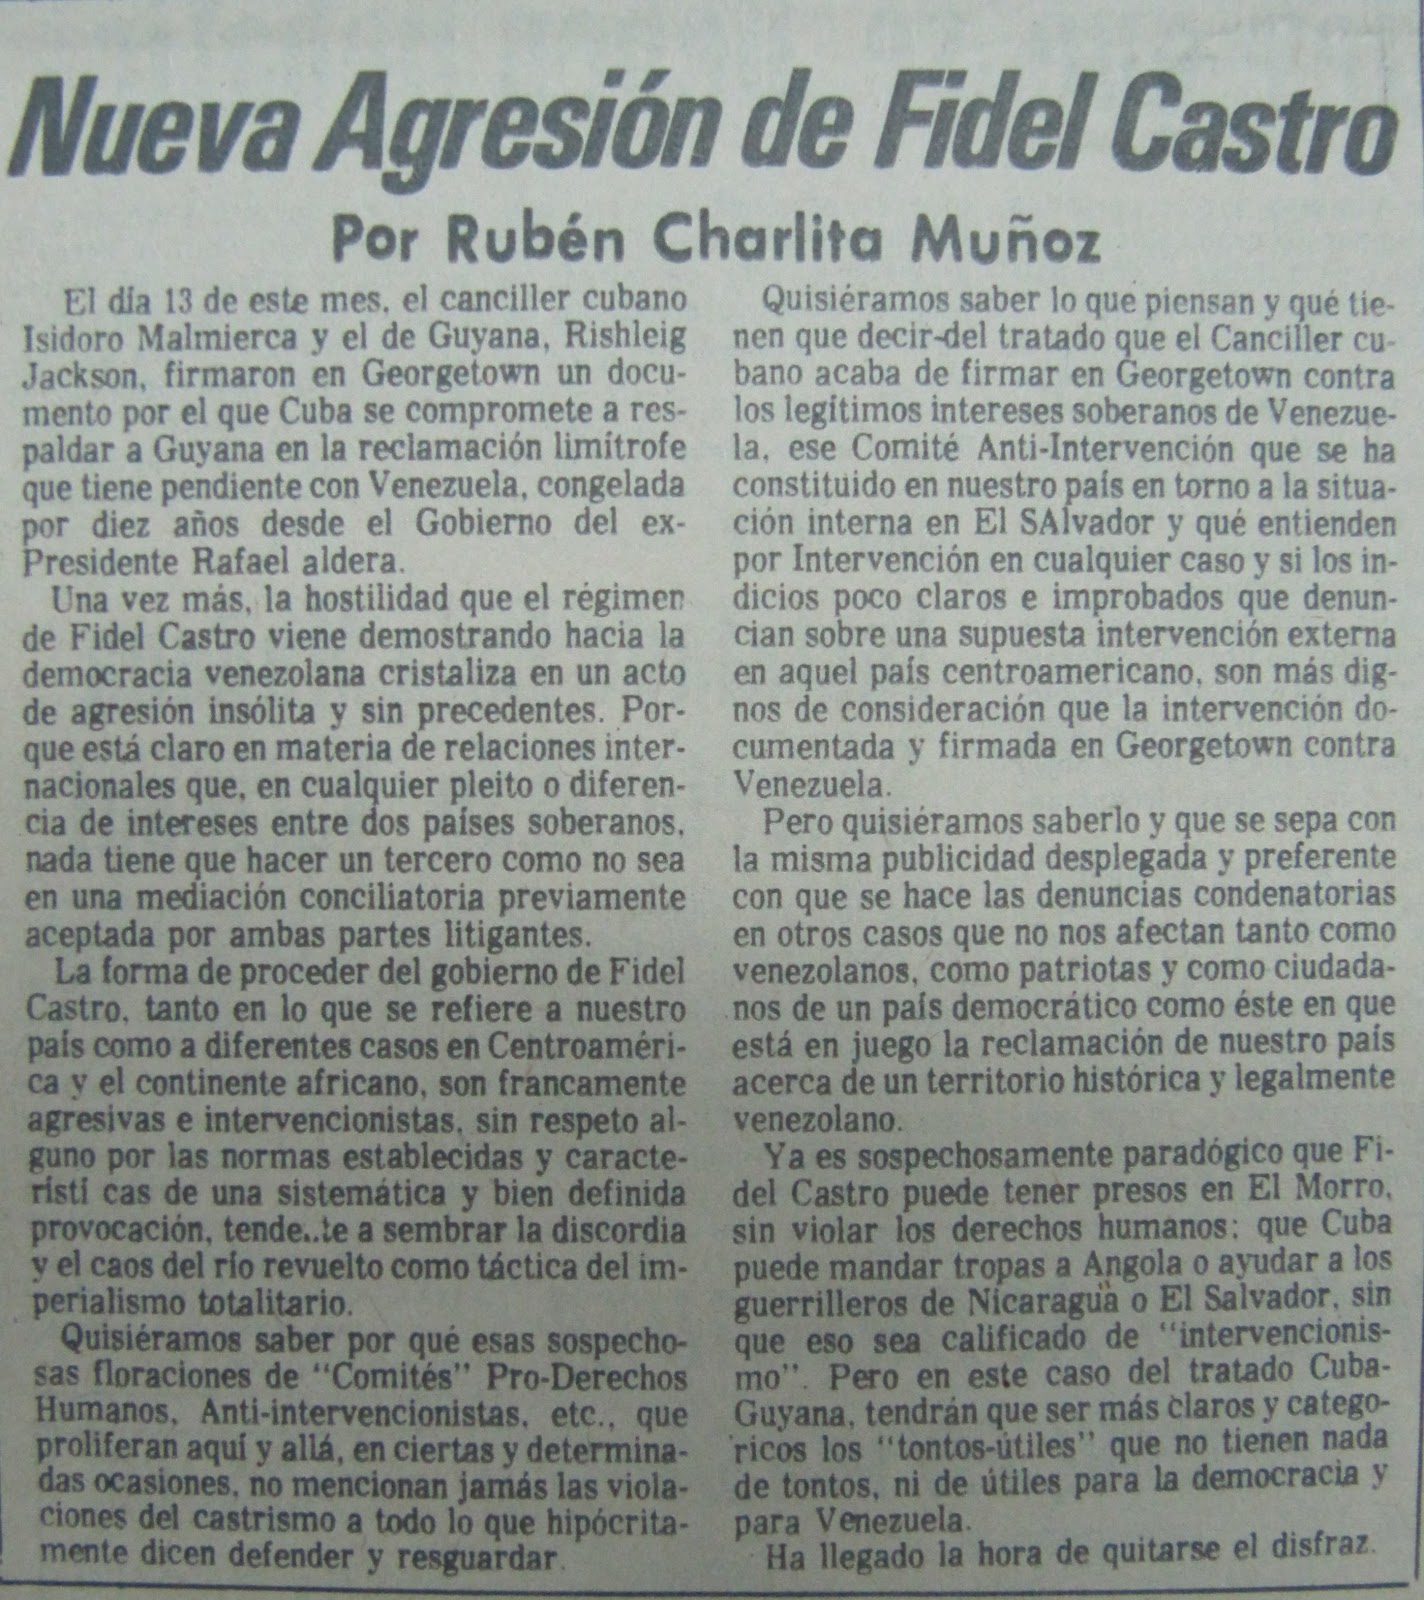 navegandoalbicentenario - Buques Logisticos - Página 23 Ruben+Charlita+Mu%25C3%25B1oz+Nueva+Agrecion+de+Fidel+Castro